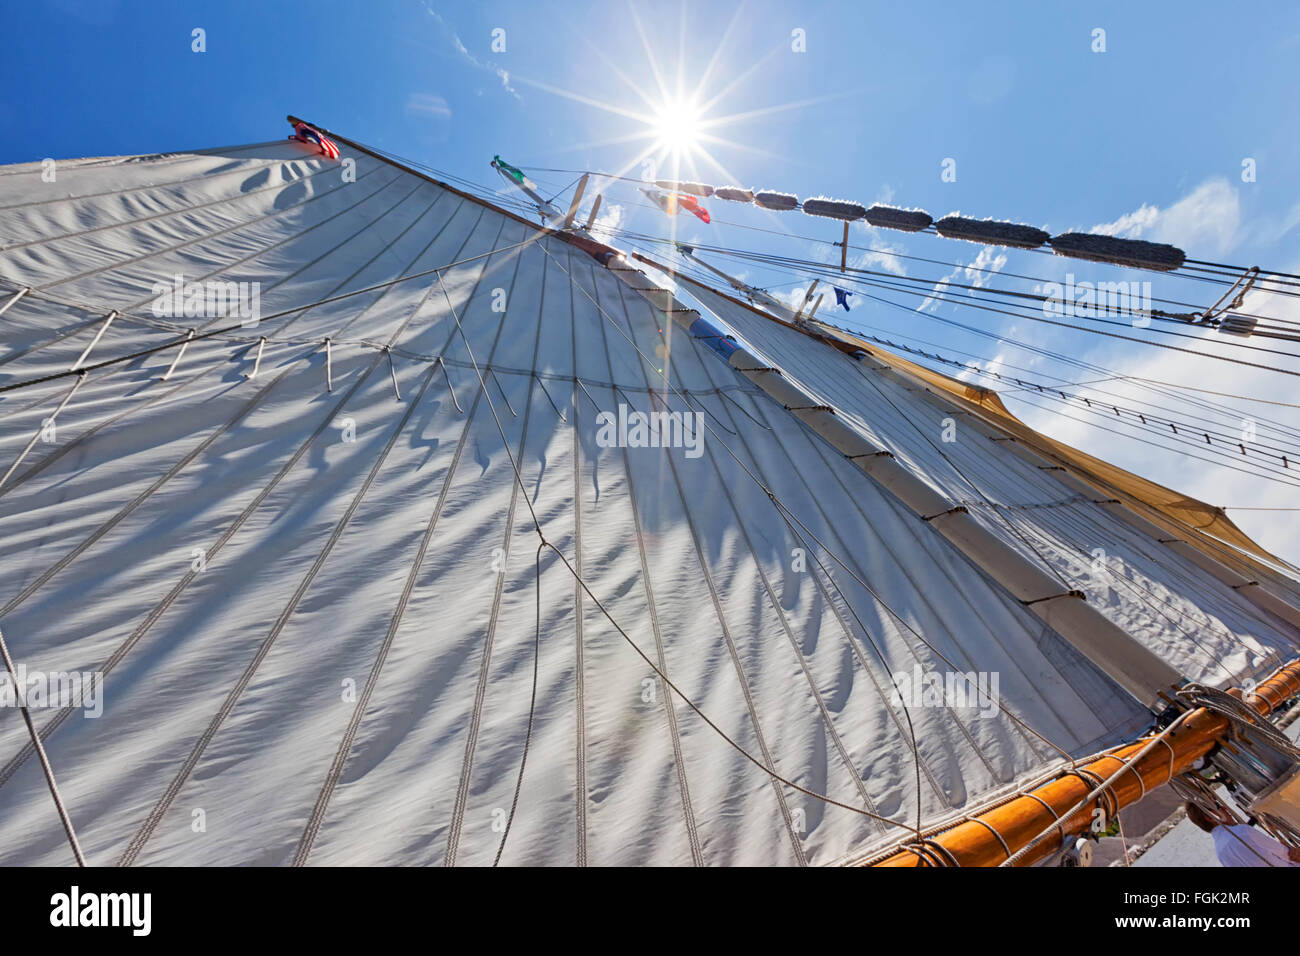 Segeln - eine große Leinwand Segeln unter schönen strahlend blauen Himmel. Mast und Segel unter einem Sonne-Stern am Lake Huron Stockfoto